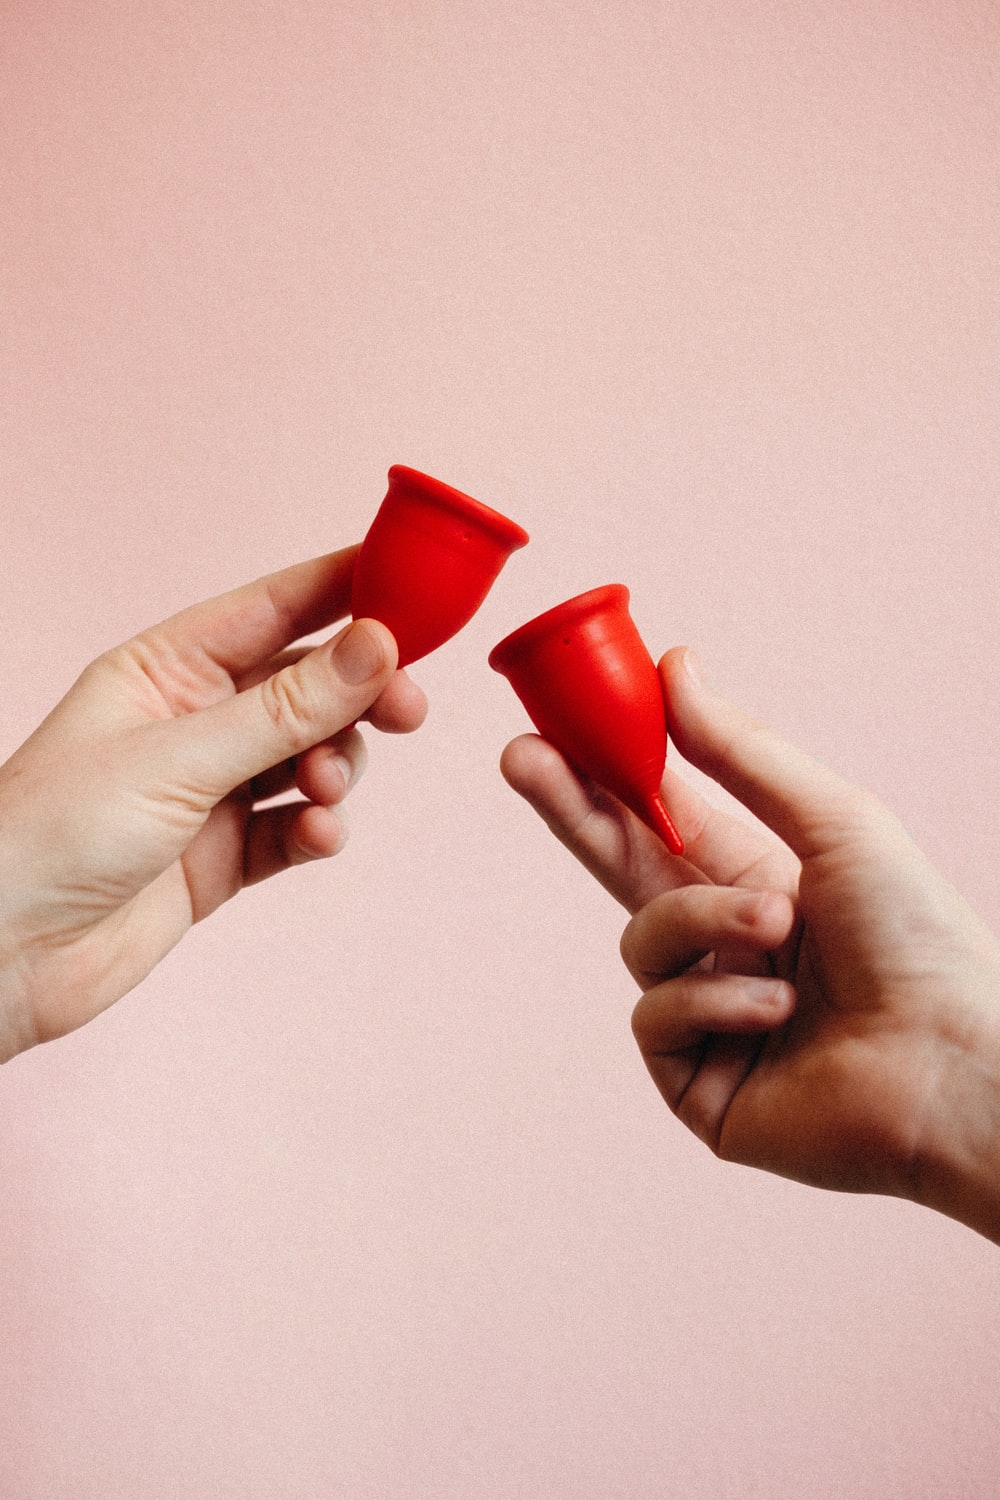 How to Get Periods: अपने पीरियड्स को प्राकृतिक रूप से समय से पहले कैसे लाएं